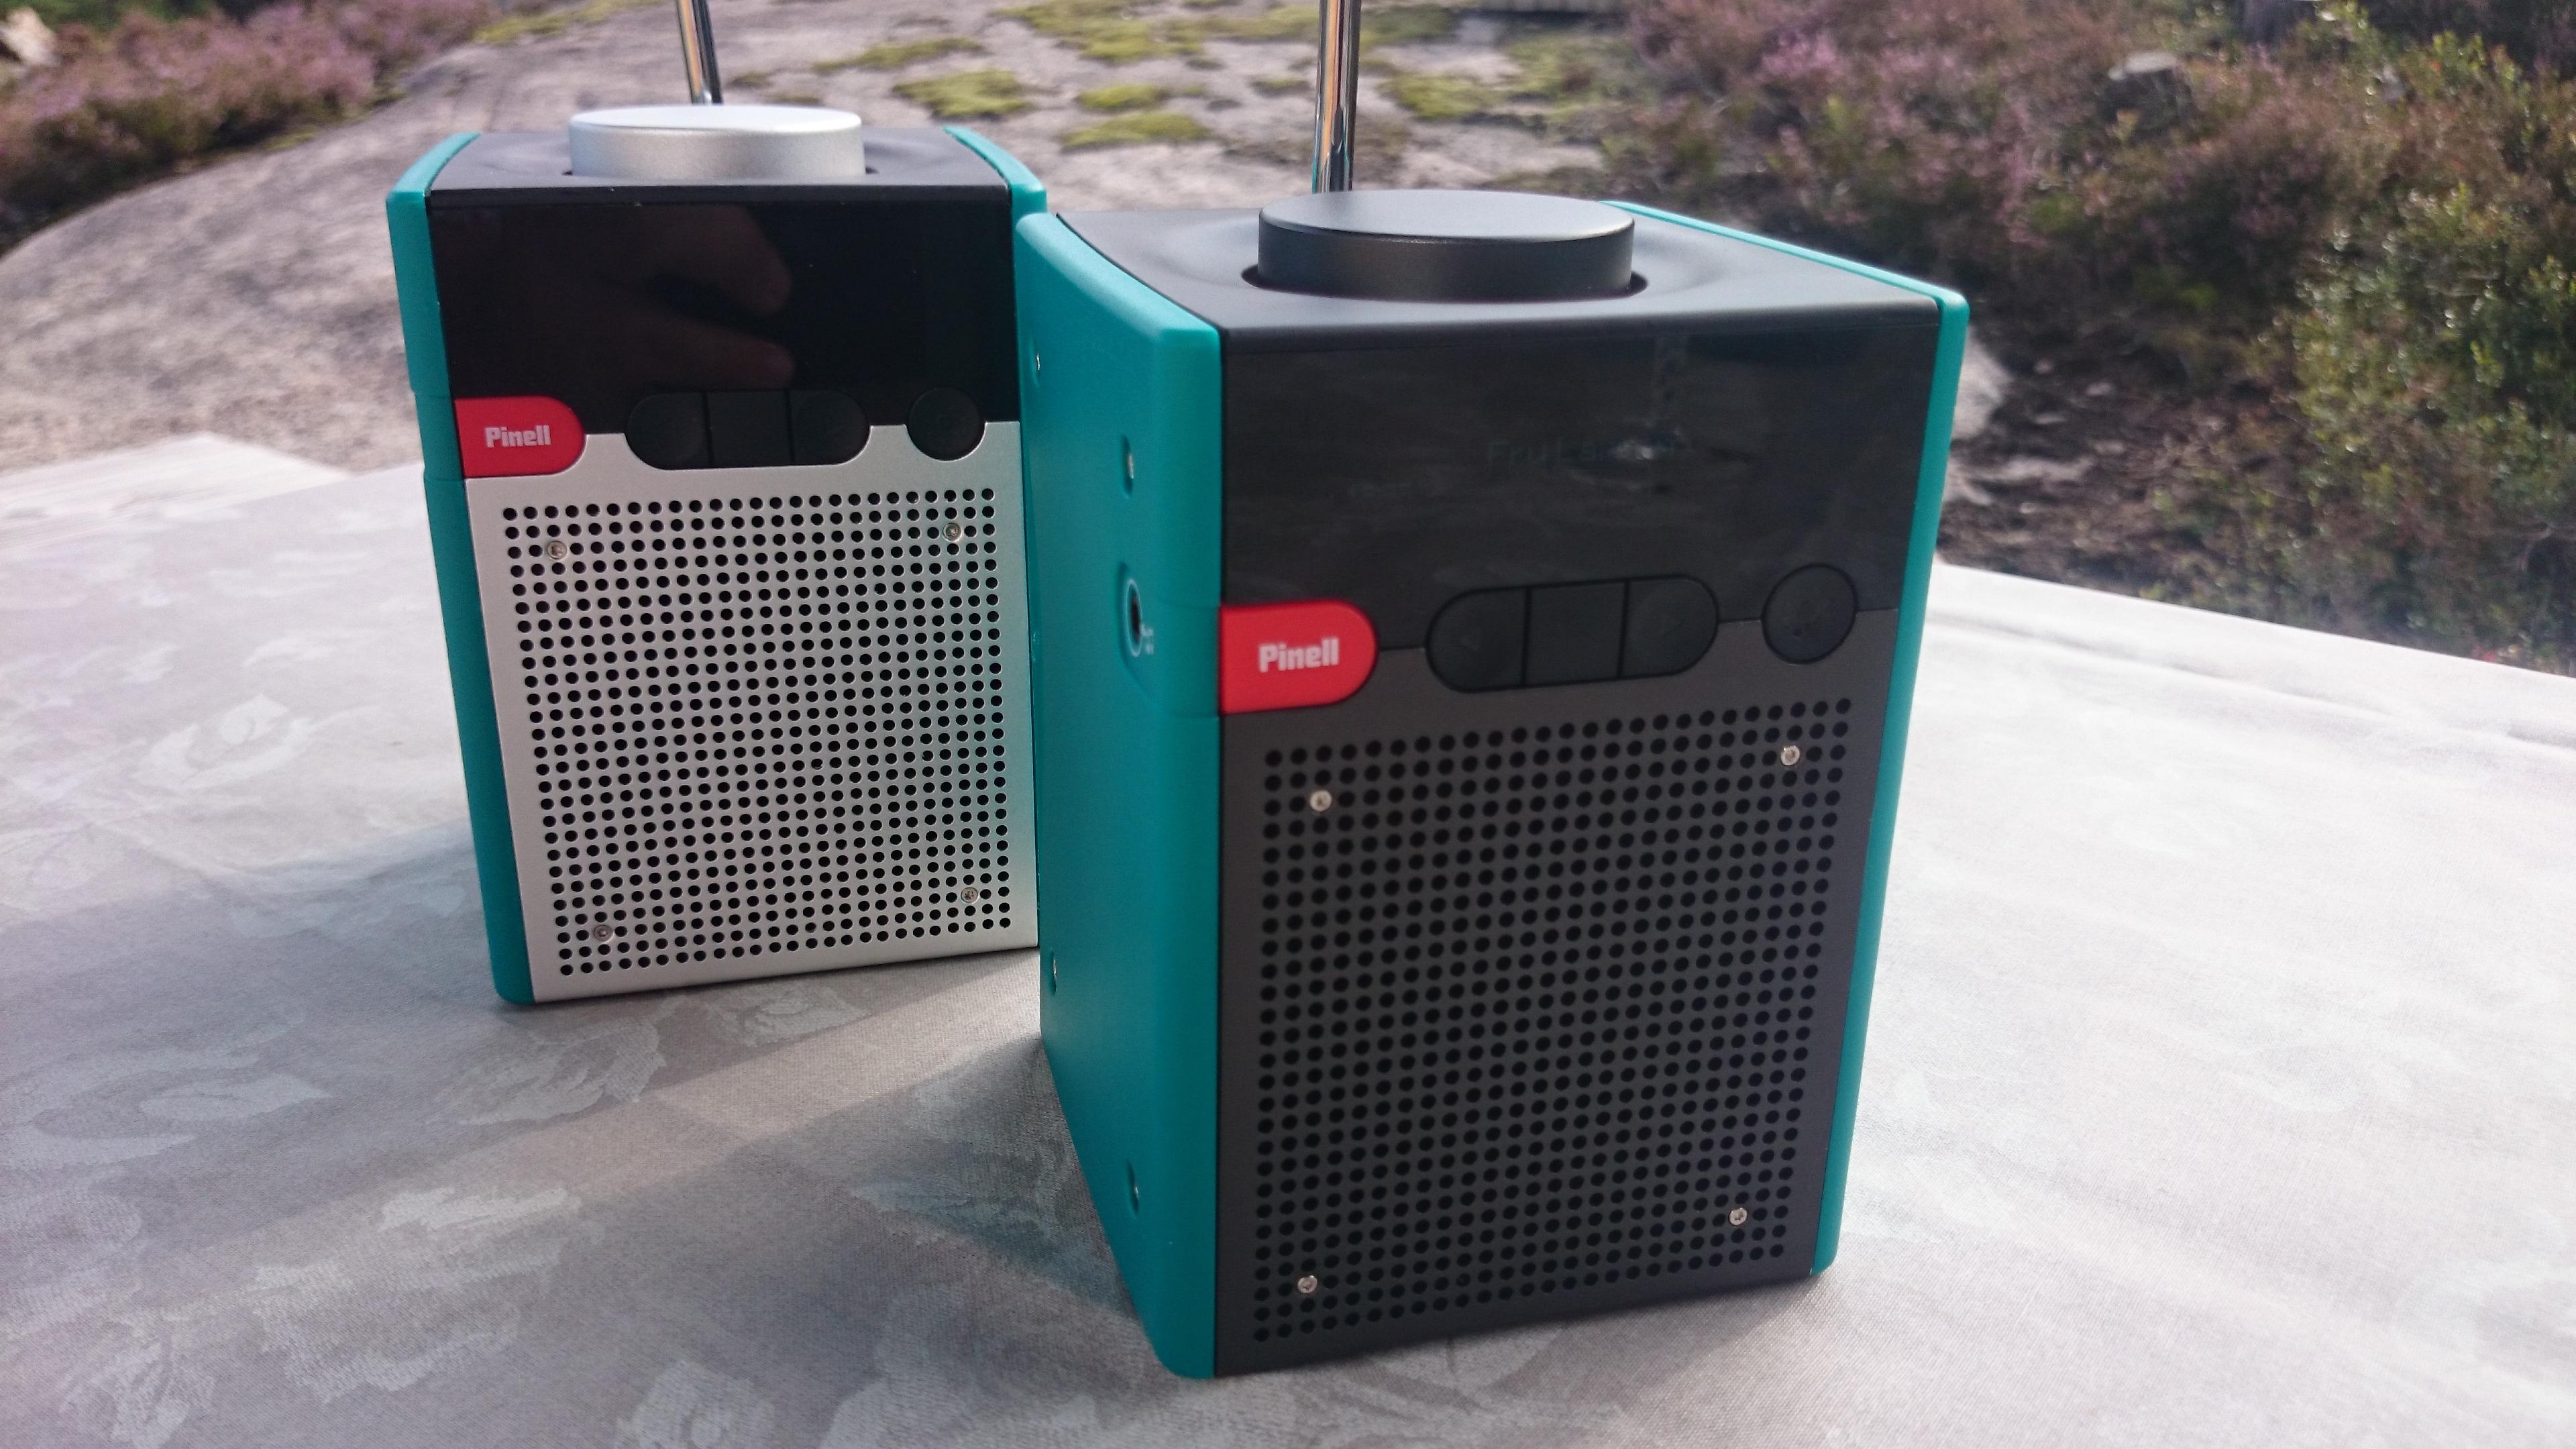 Den fremste radioen er en Pinell Go+, mens radioen i bakgrunnen er den originale Pinell-radioen uten Bluetooth. Den nye versjonen har mørke metallflater. (Foto: Espen Irwing Swang, Tek.no)